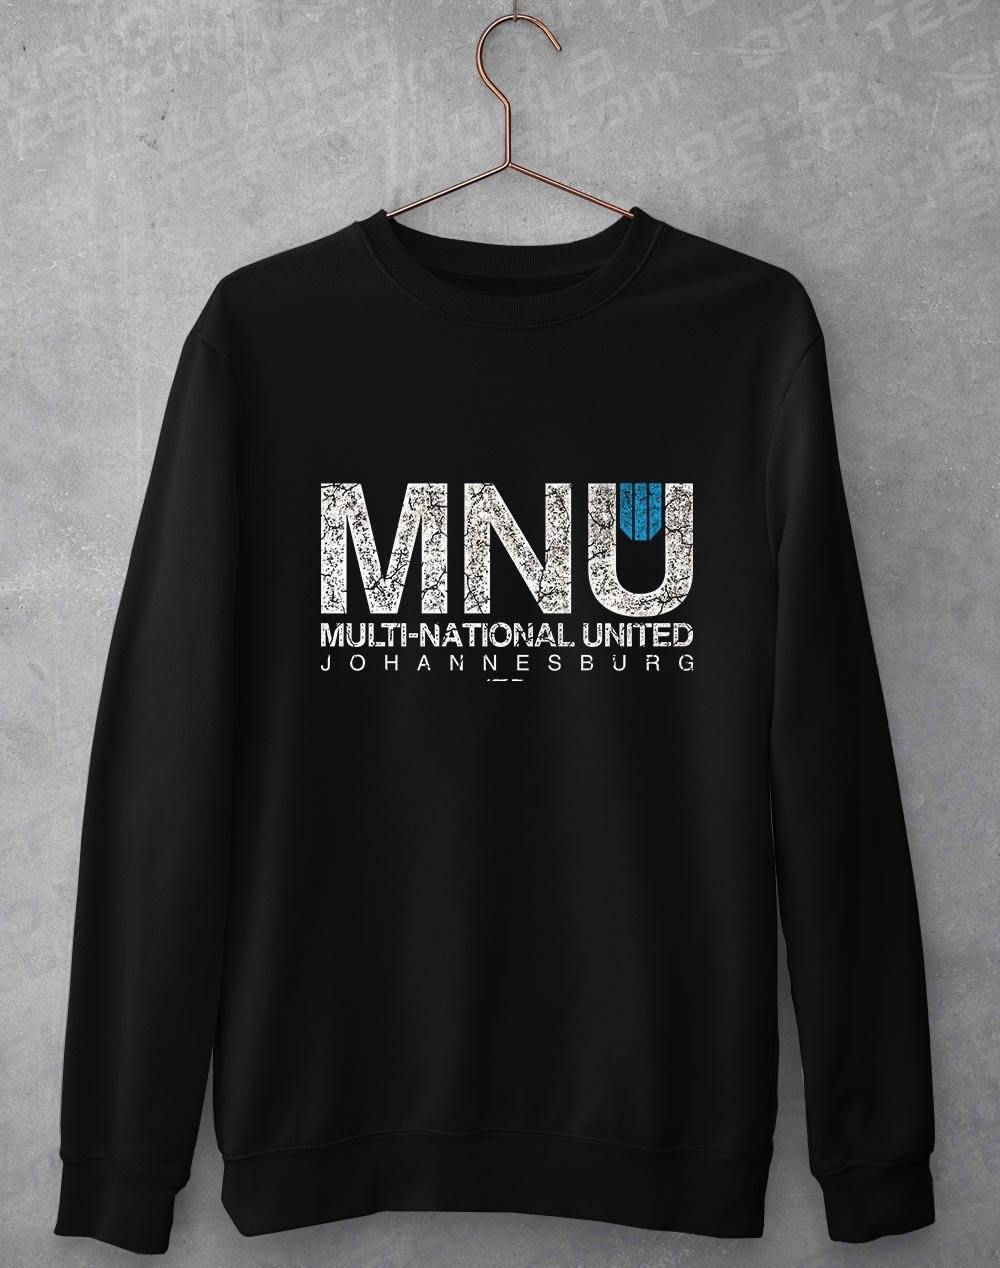 Multi National United Sweatshirt S / Black  - Off World Tees